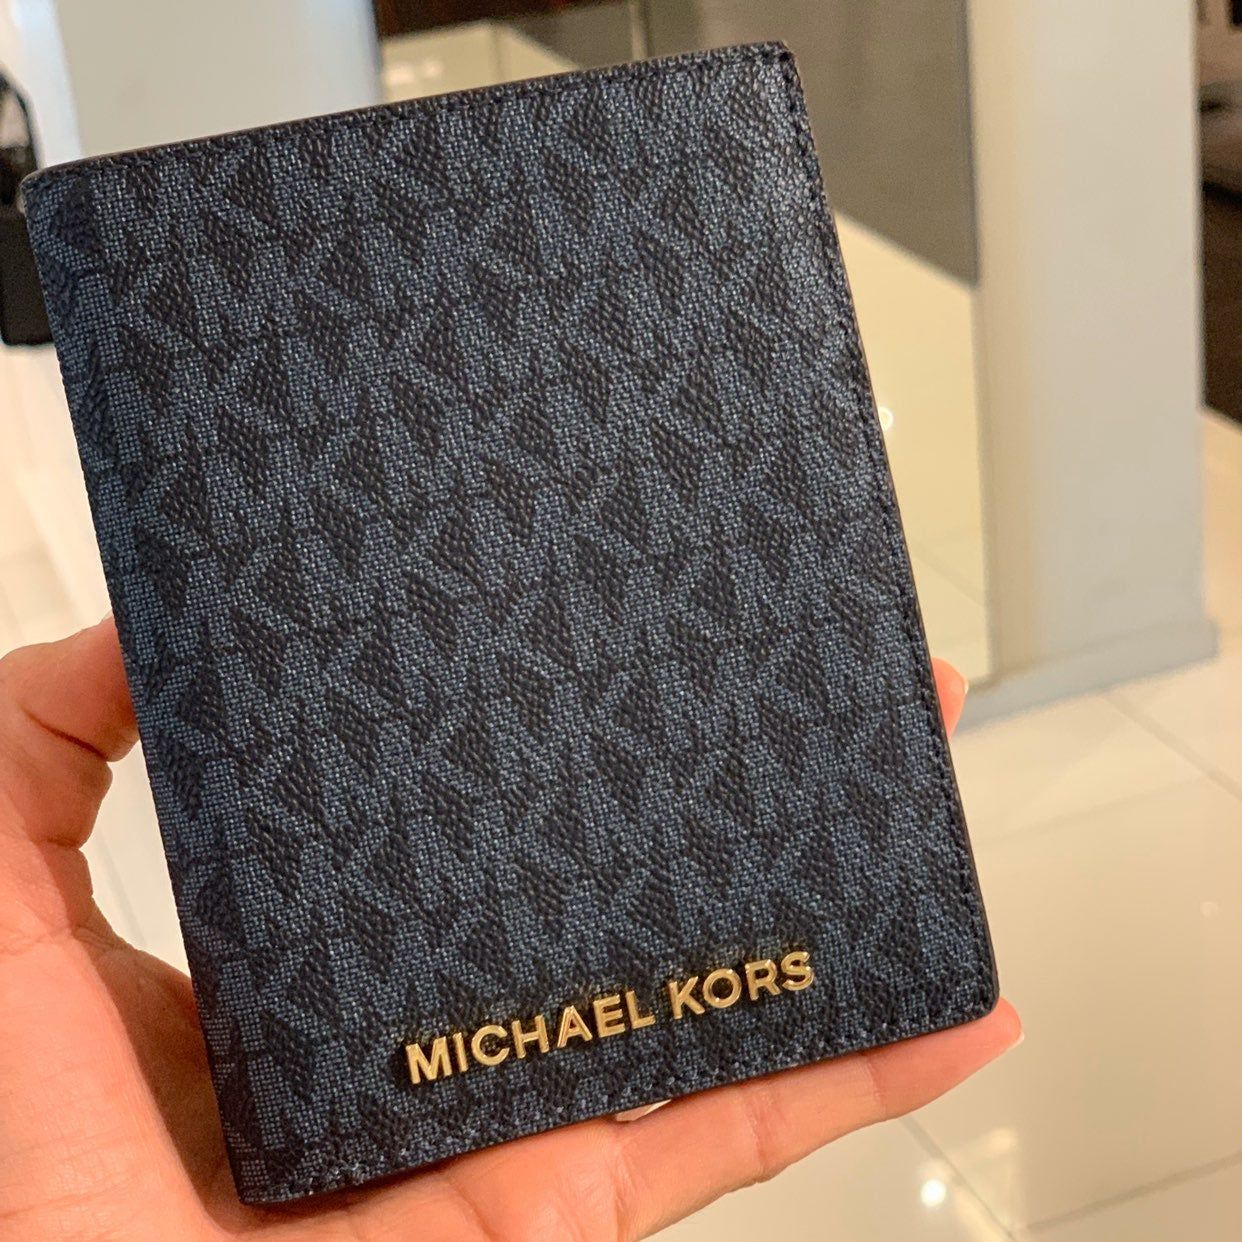 Buy Michael Kors Passport Covers Online 